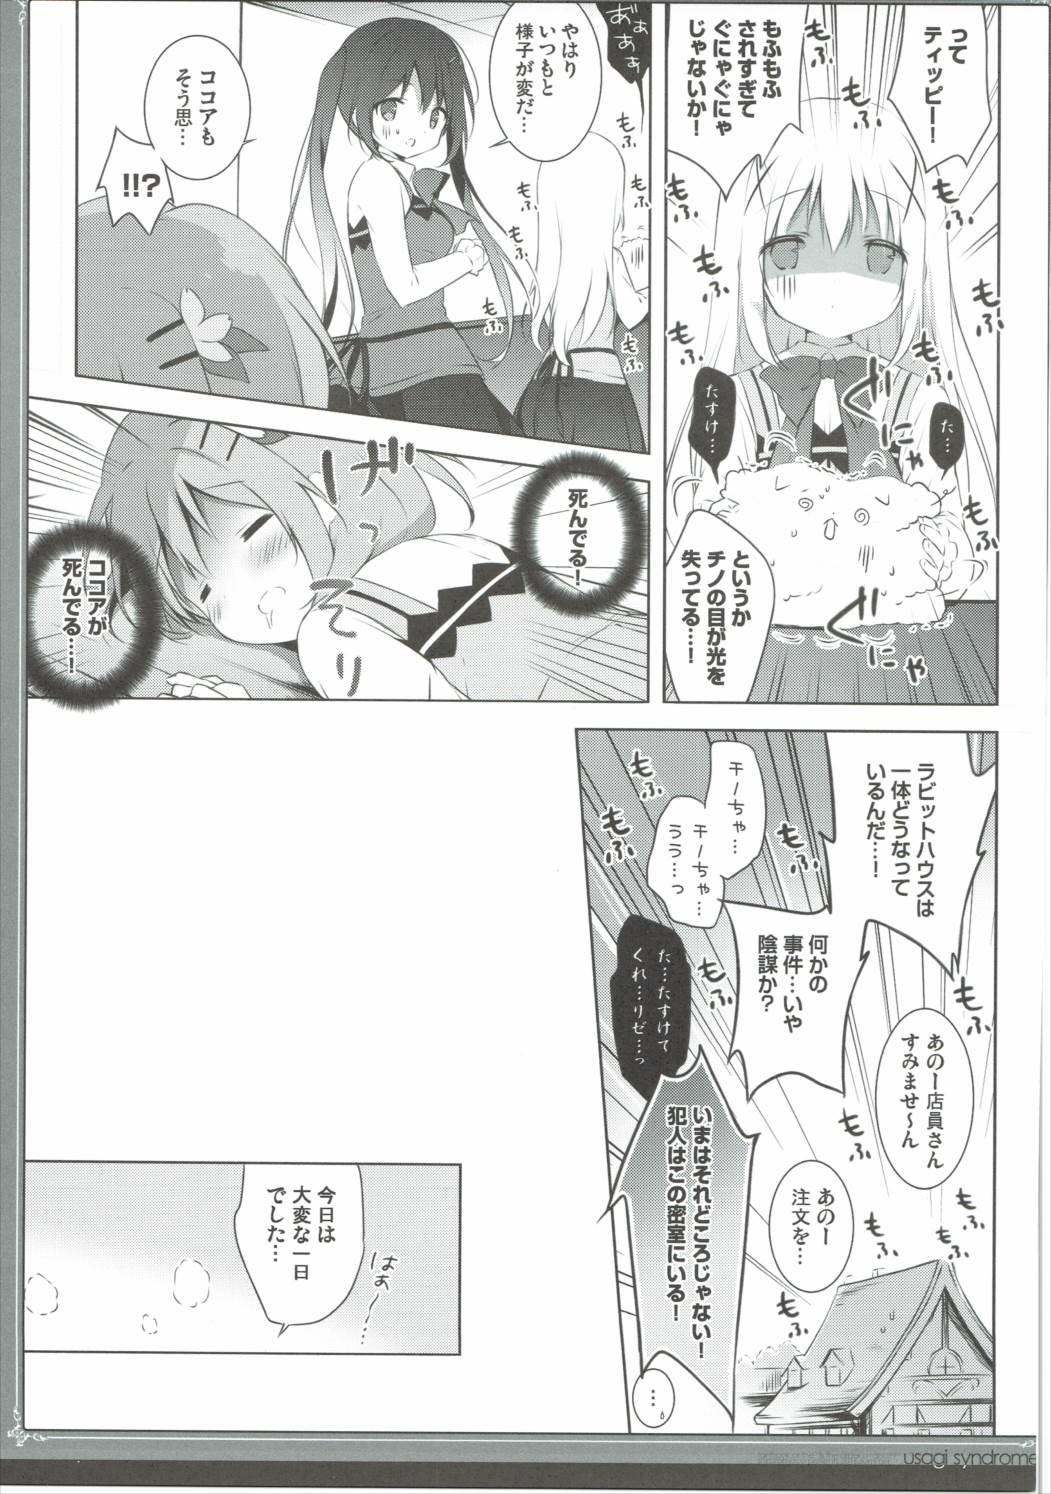 Butts Usagi Syndrome 3 - Gochuumon wa usagi desu ka Cogiendo - Page 8